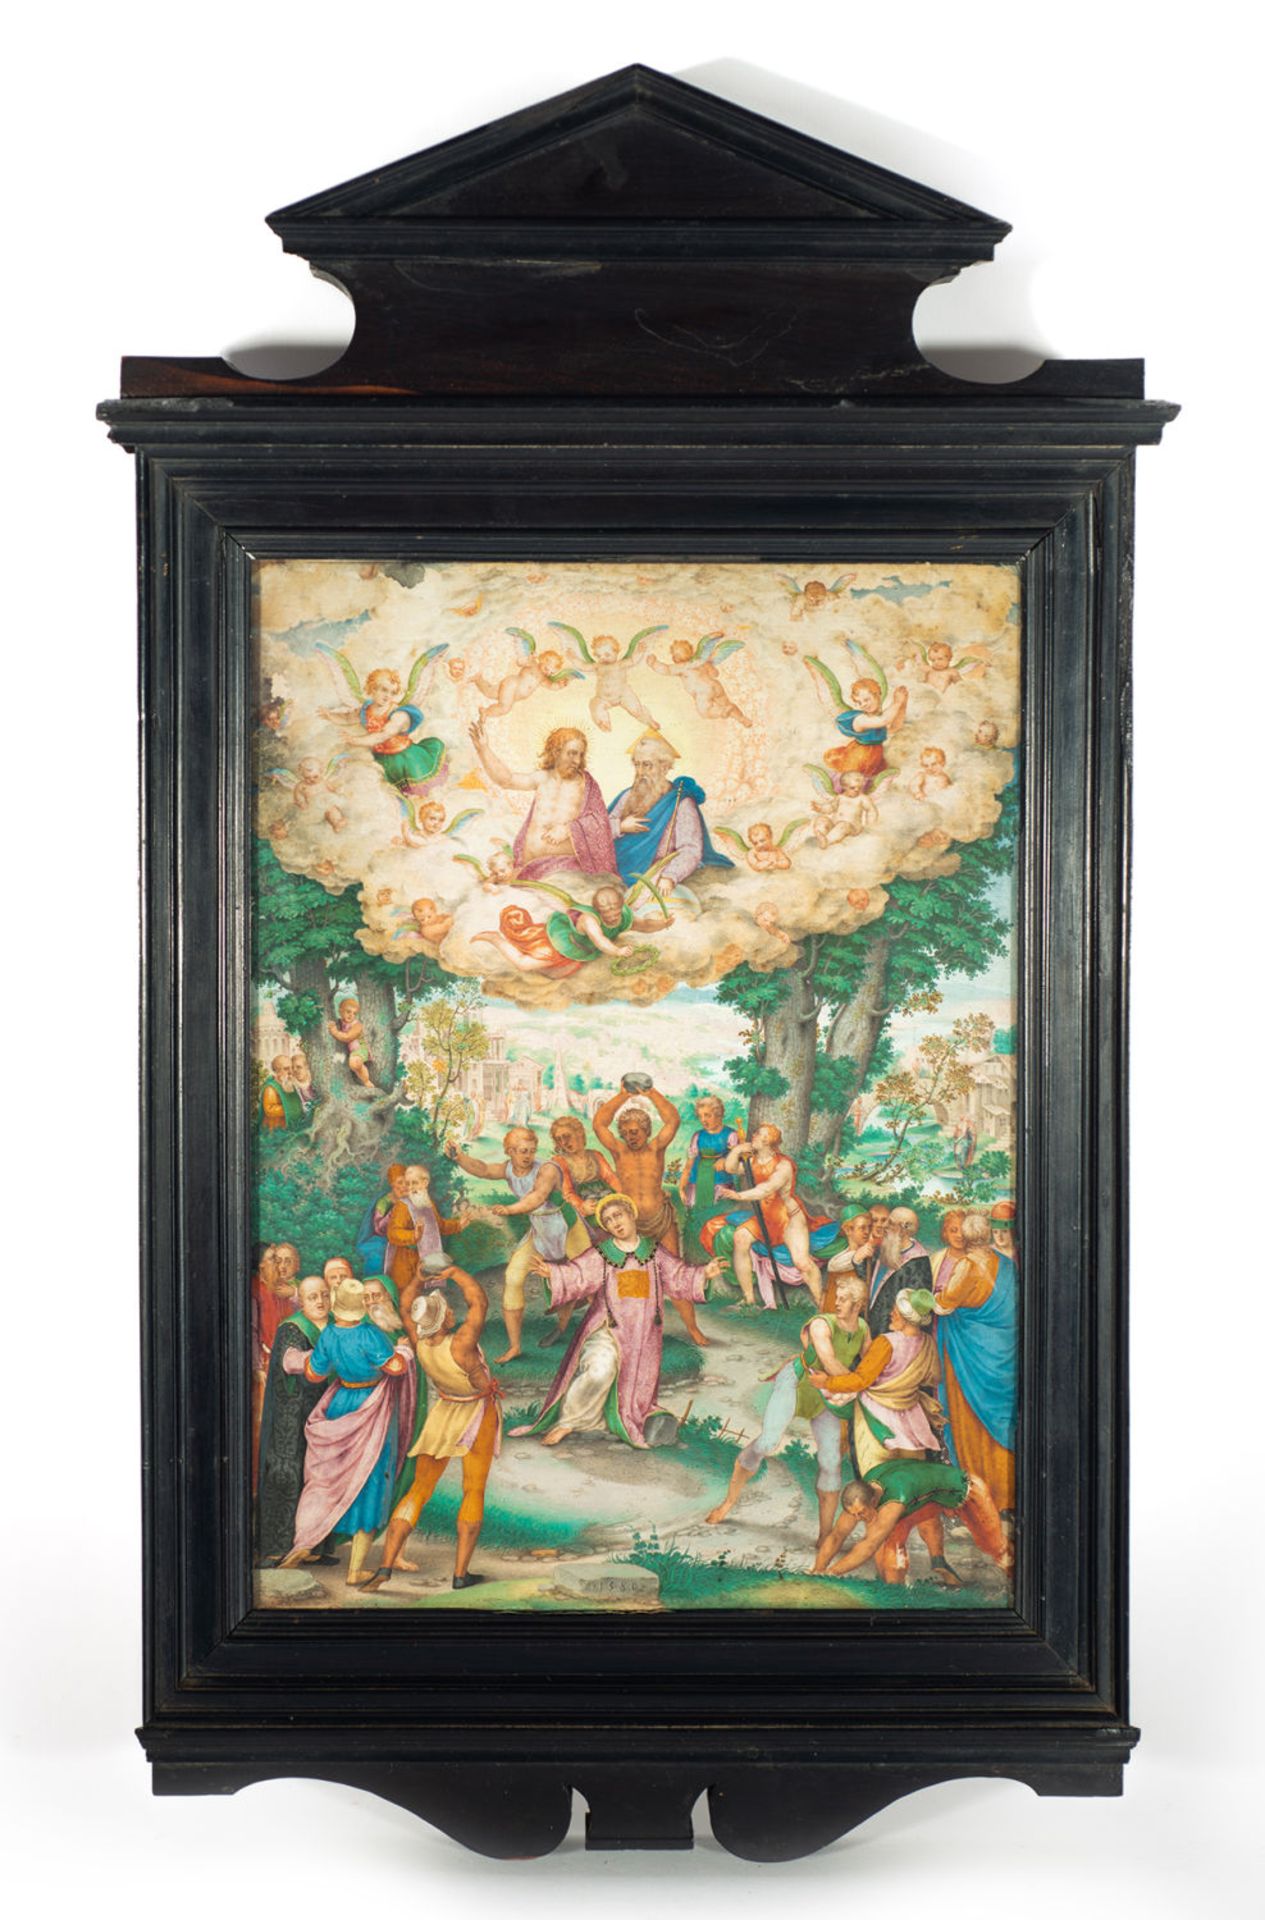 GIOVANNI BATTISTA CASTELLO, “THE GENOVESE” (Genoa, 1549 - ca. 1639), The Martyrdom of Saint Stephen,